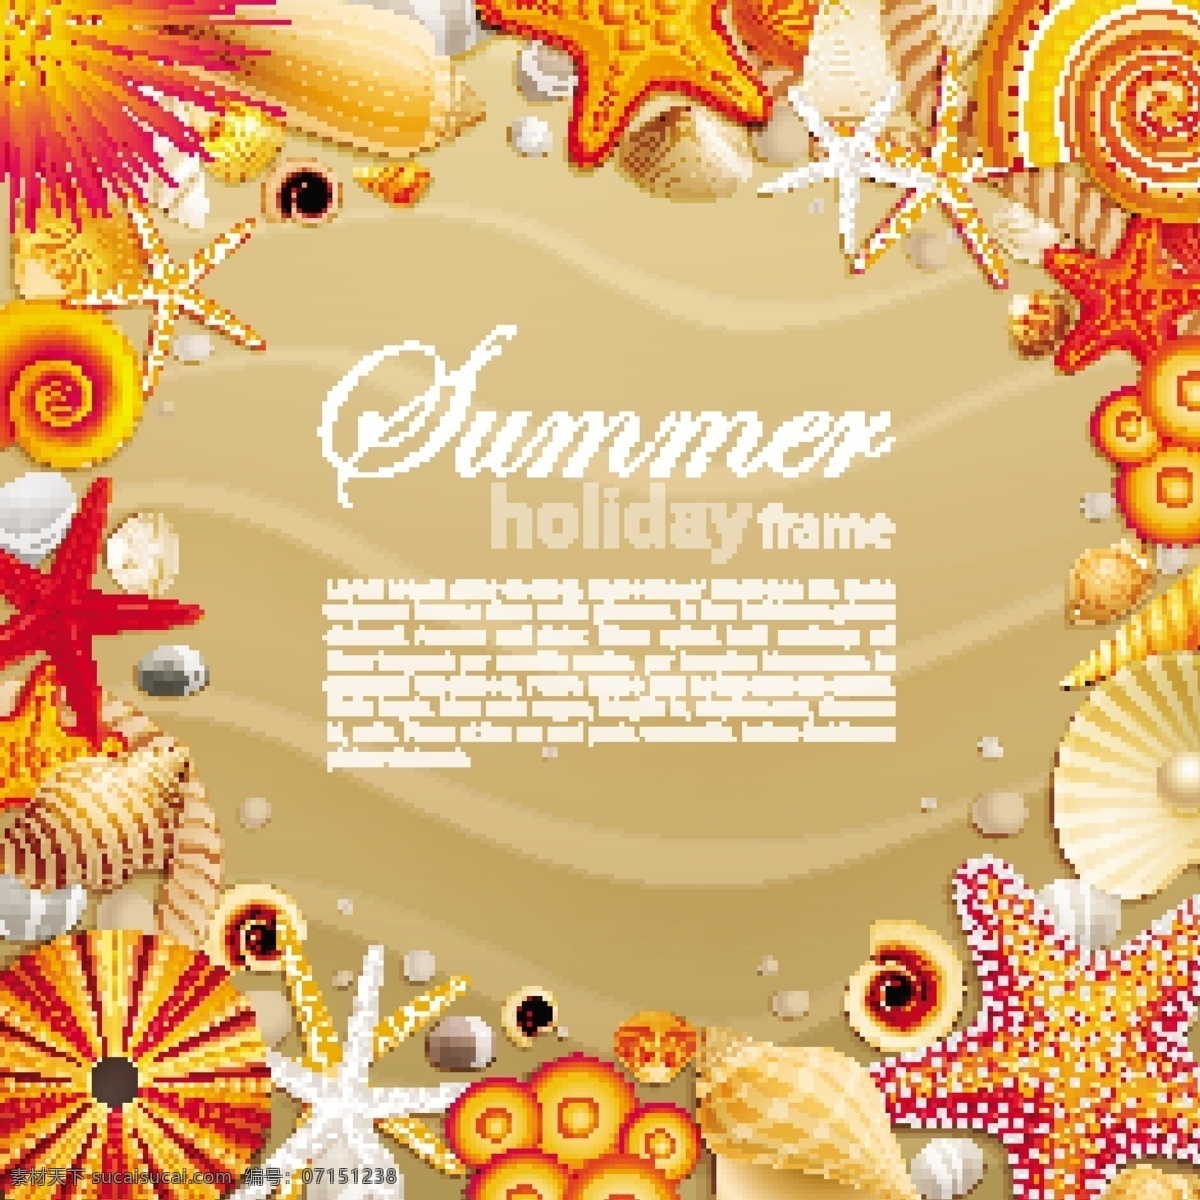 海洋 主题 背景 eps格式 贝壳 海星 沙滩 相册边框 夏季 边框 矢量 海报 其他海报设计